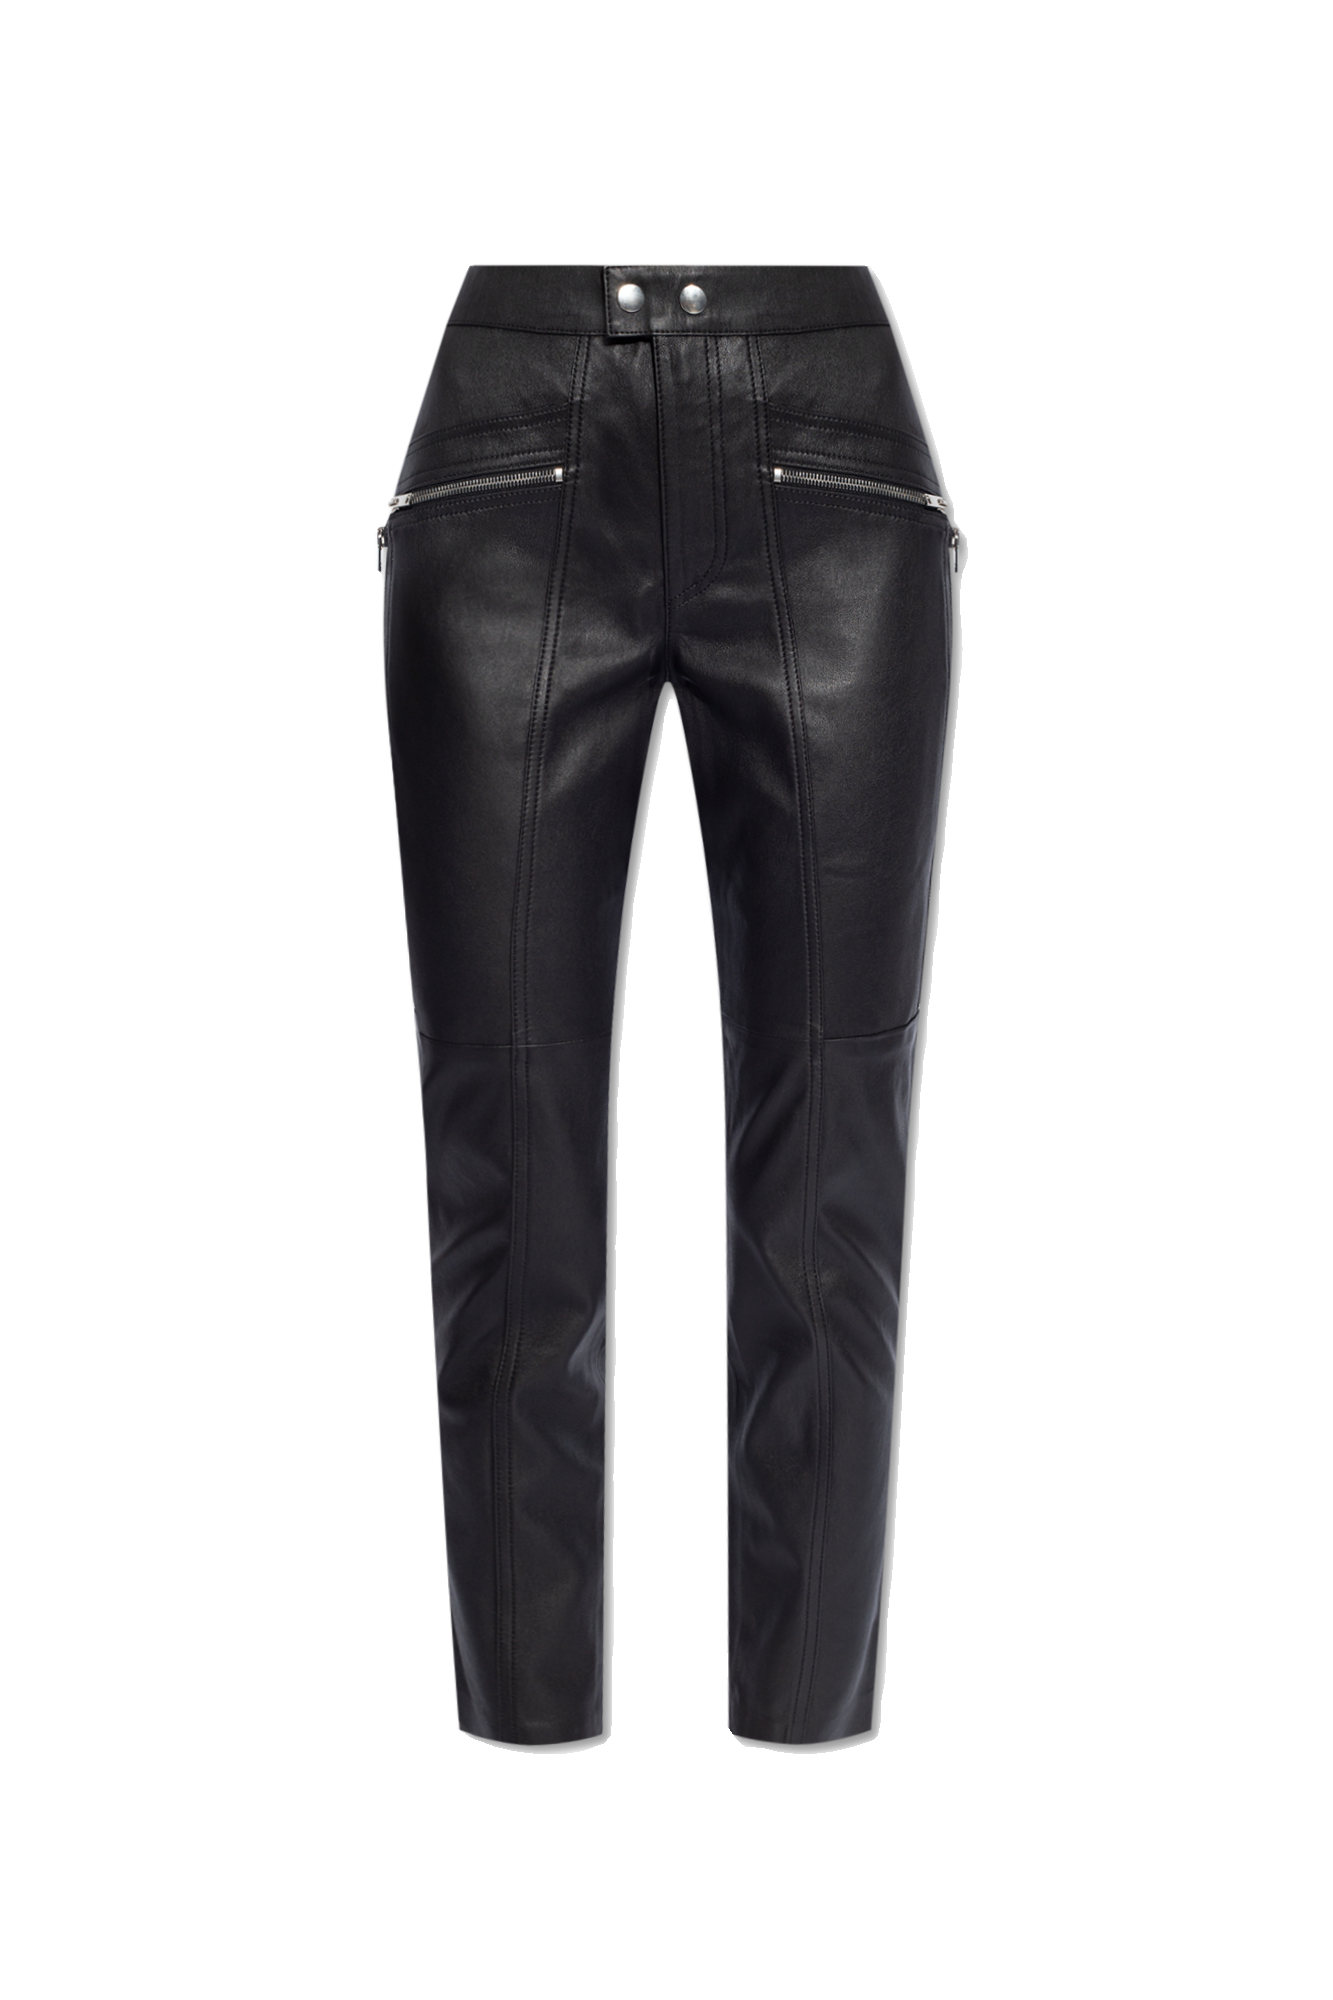 Black 'Hizilis' leather trousers Isabel Marant - GenesinlifeShops Chile -  camilla forbidden fruit dress item